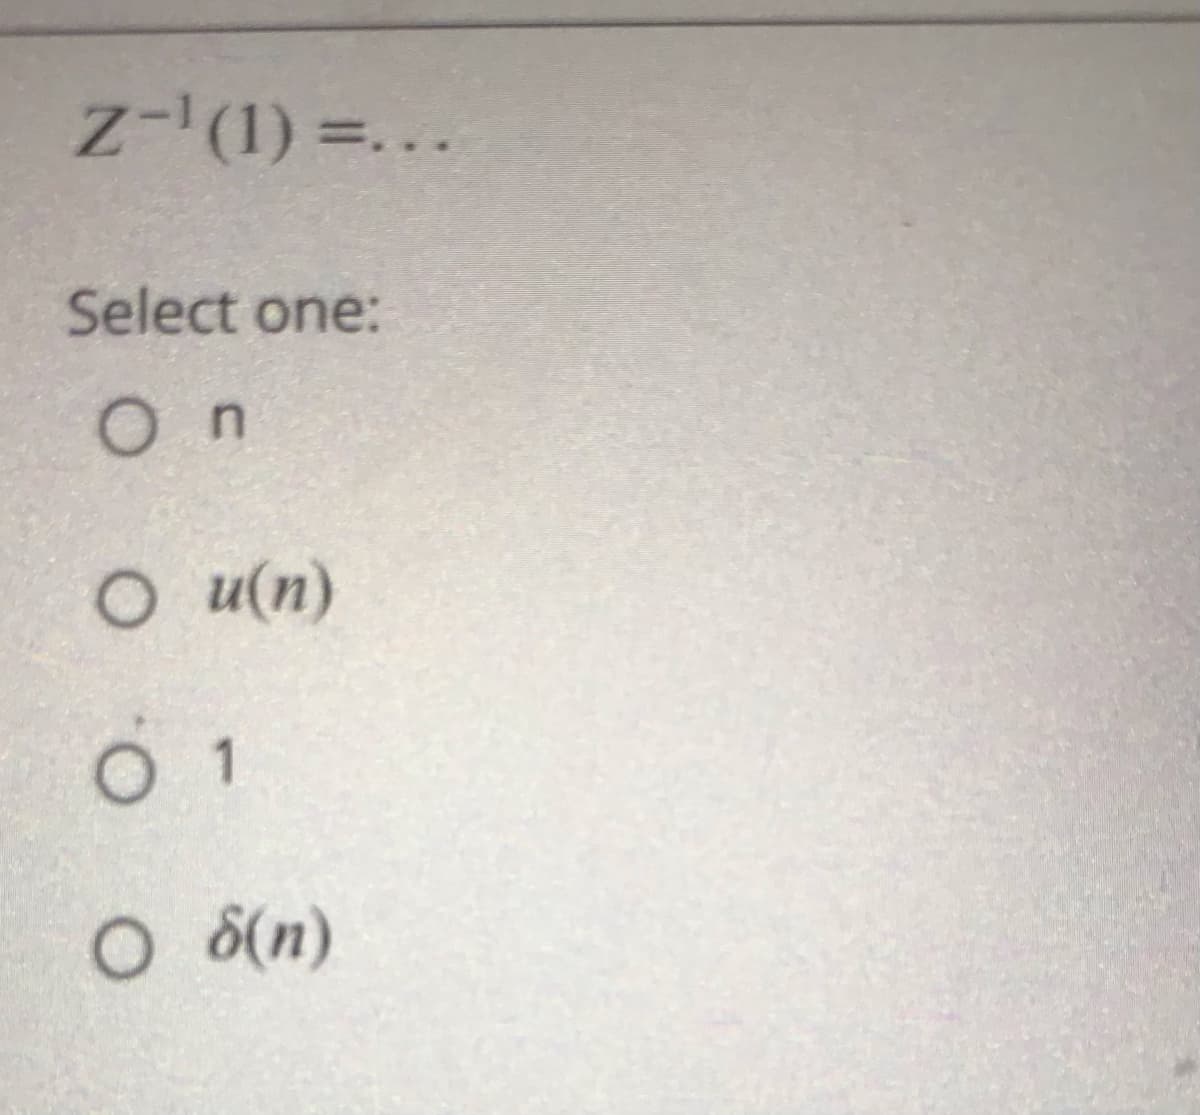 z-'(1) =...
Select one:
On
O u(n)
O 8(n)
O. O
